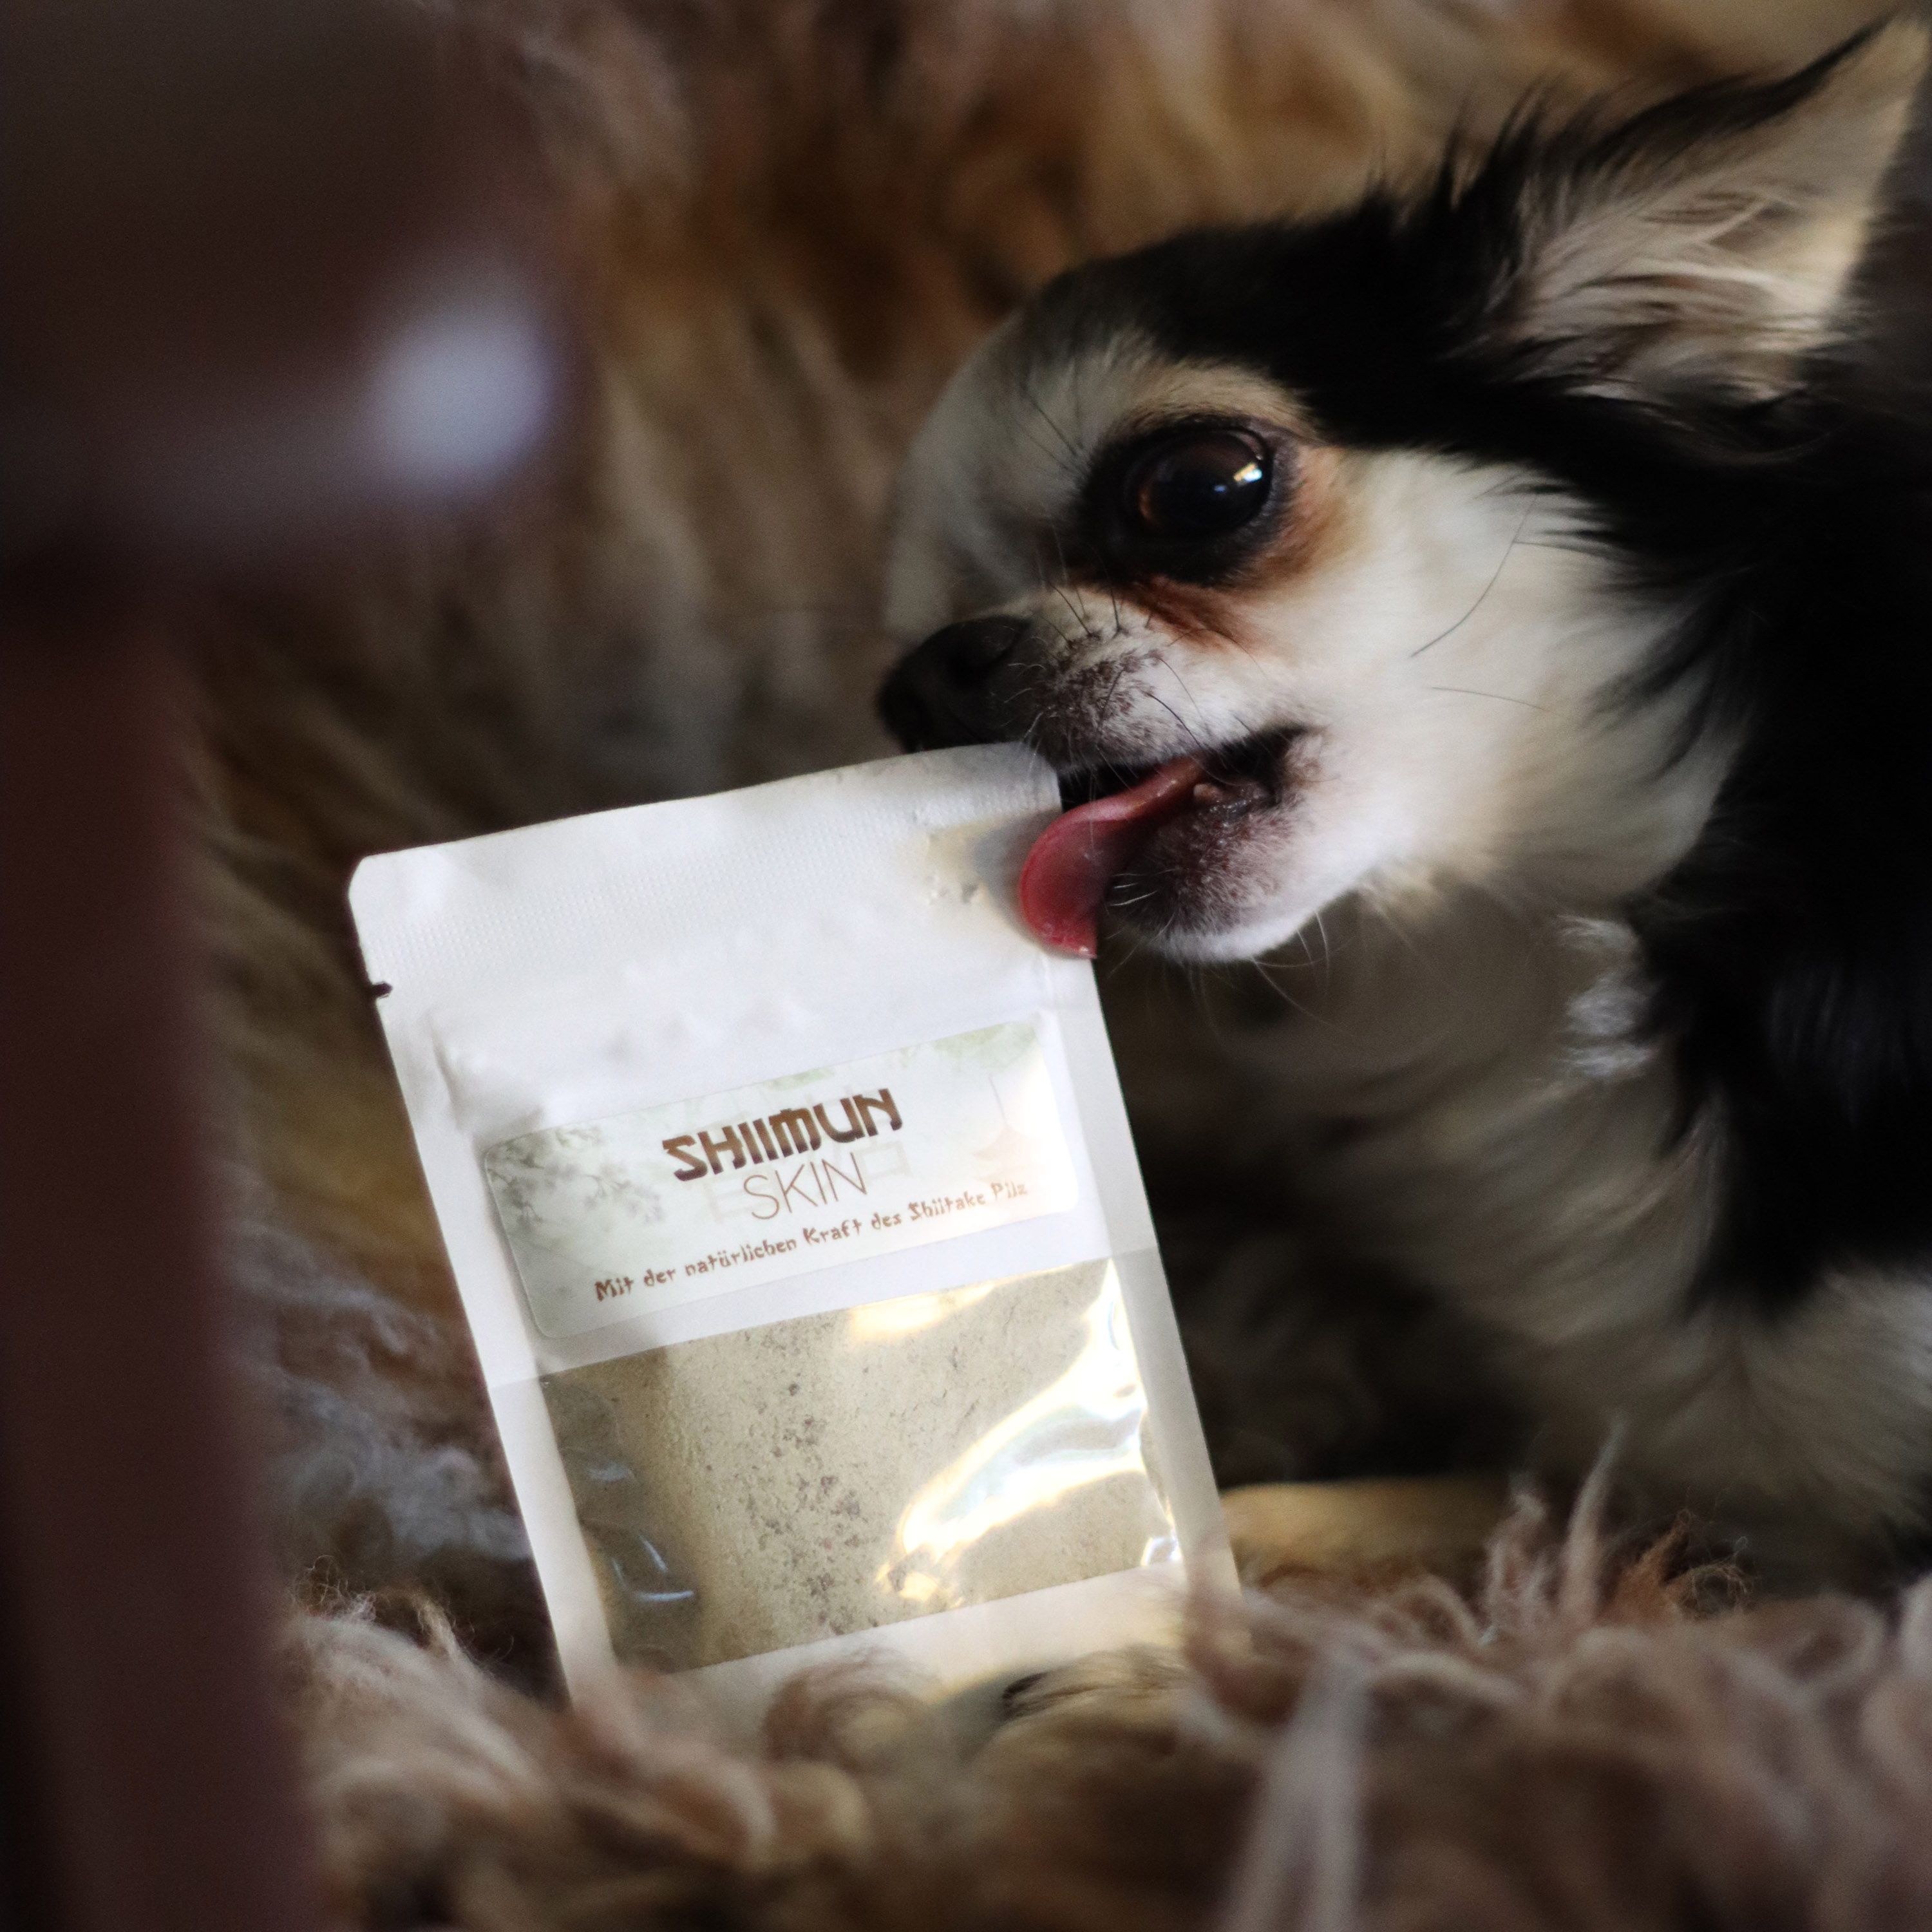 Marsapet Nahrungsergänzung für Hunde und Katzen mit Shiitake - Shiimun Skin Pulver